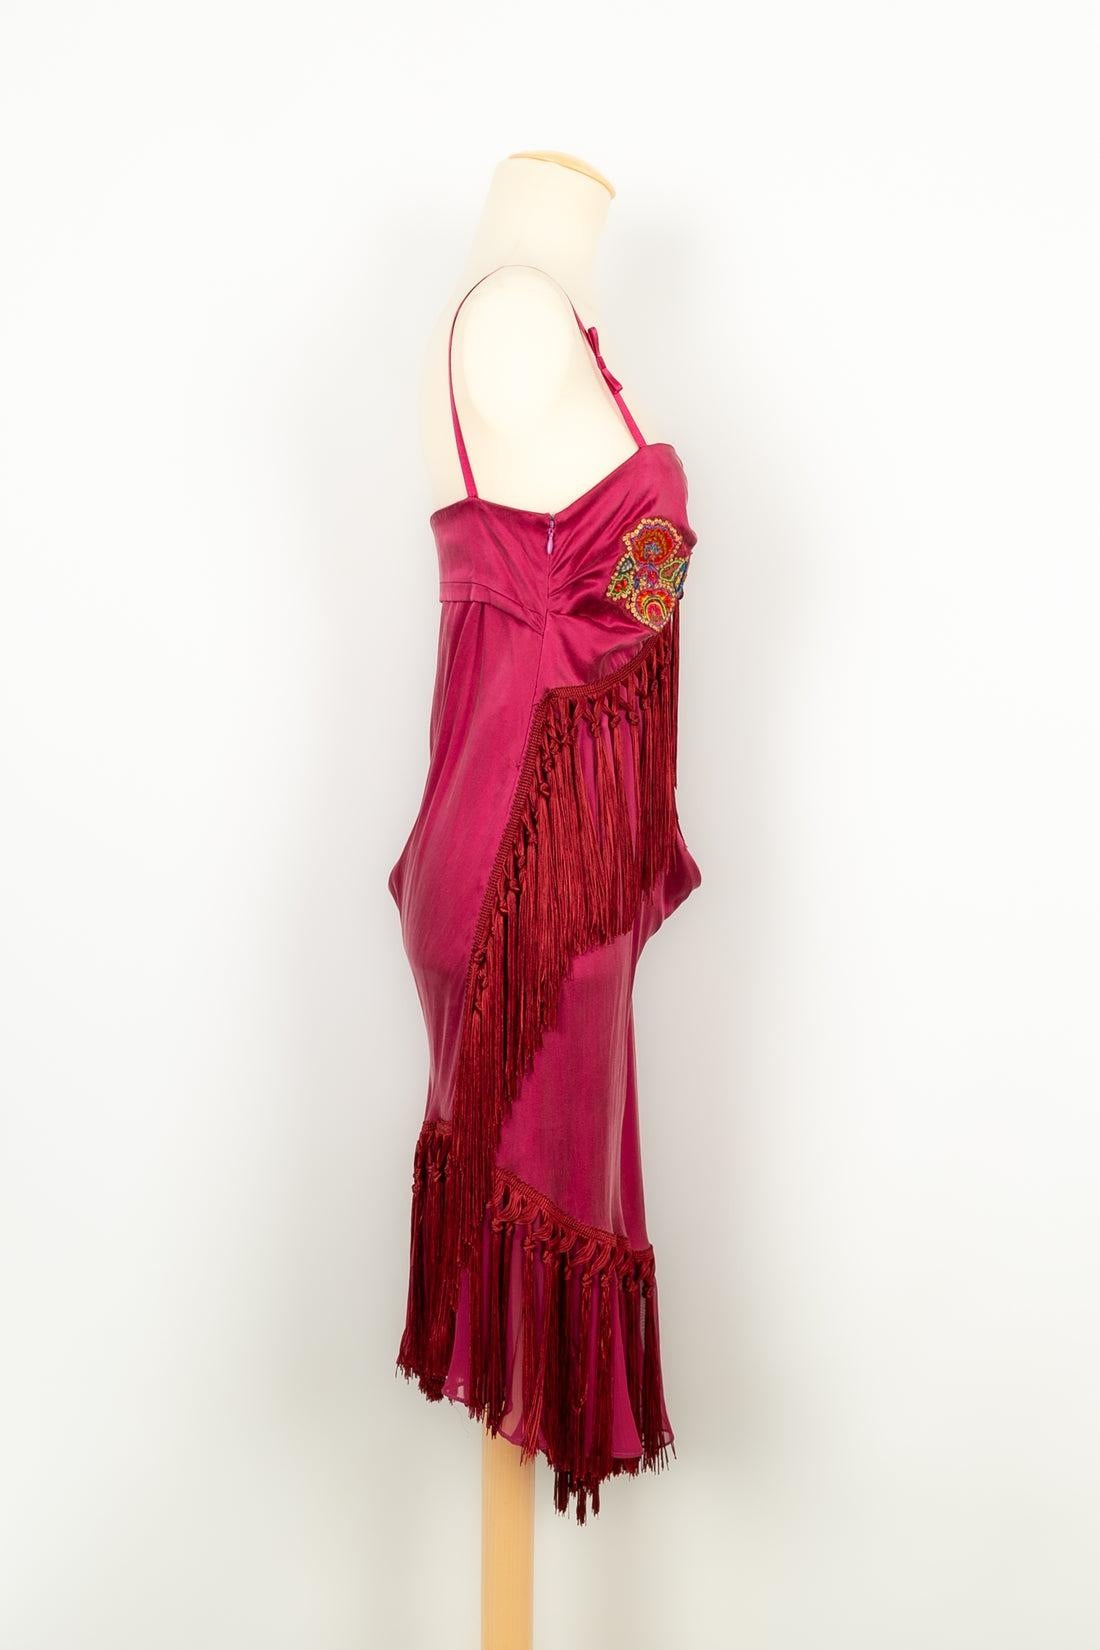 Women's John Galliano Dress in Pink Silk, 2000s For Sale